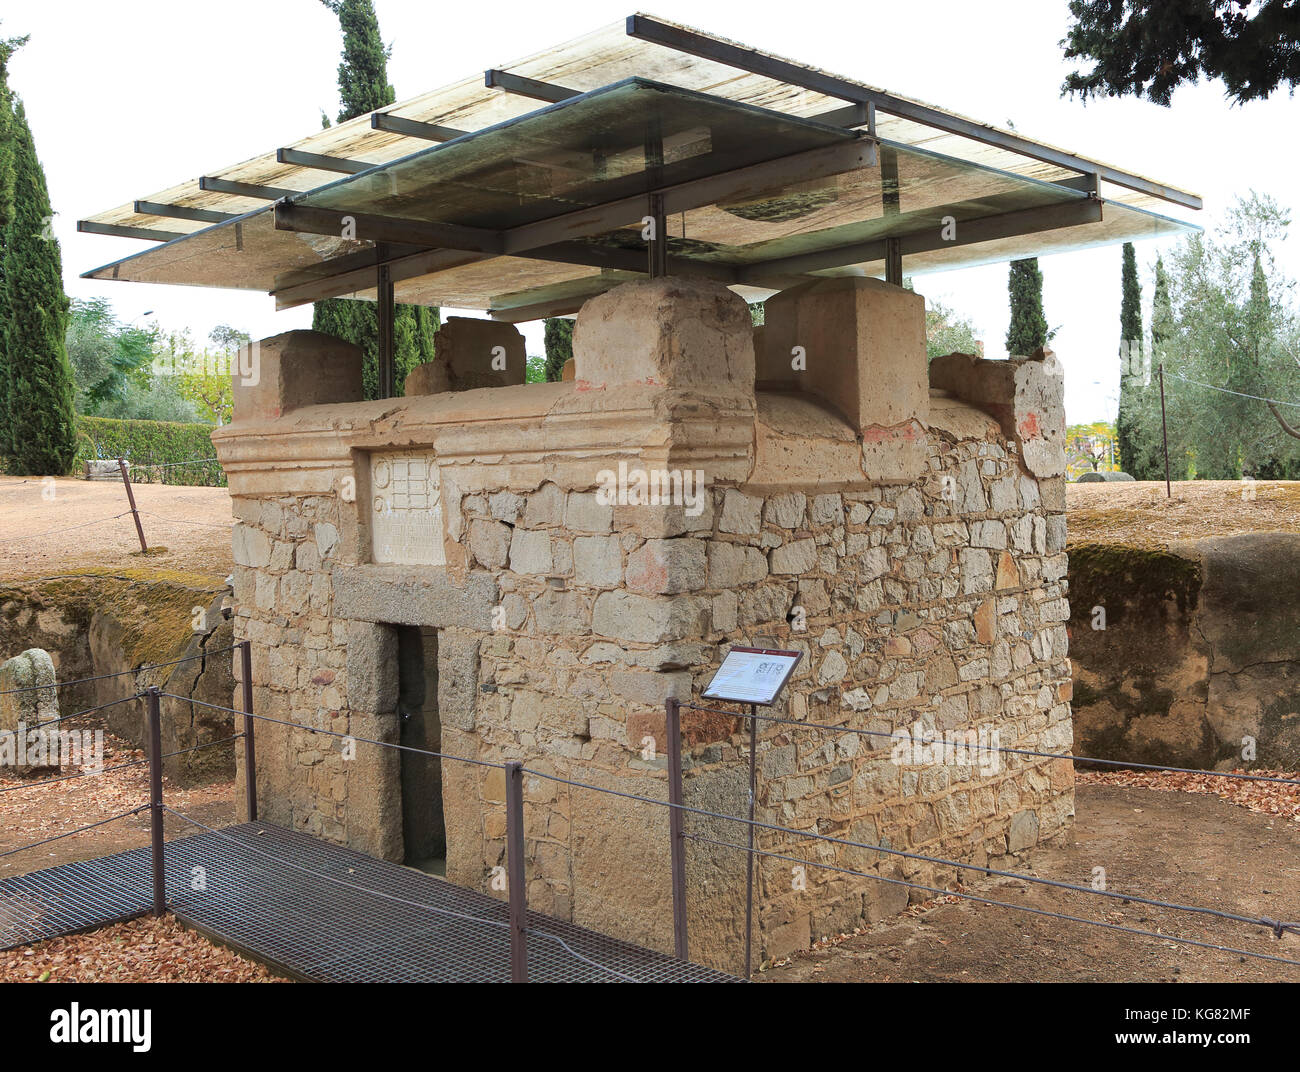 Columbarios cimetière Romain mausolées funéraires, Merida, Estrémadure, Espagne Banque D'Images